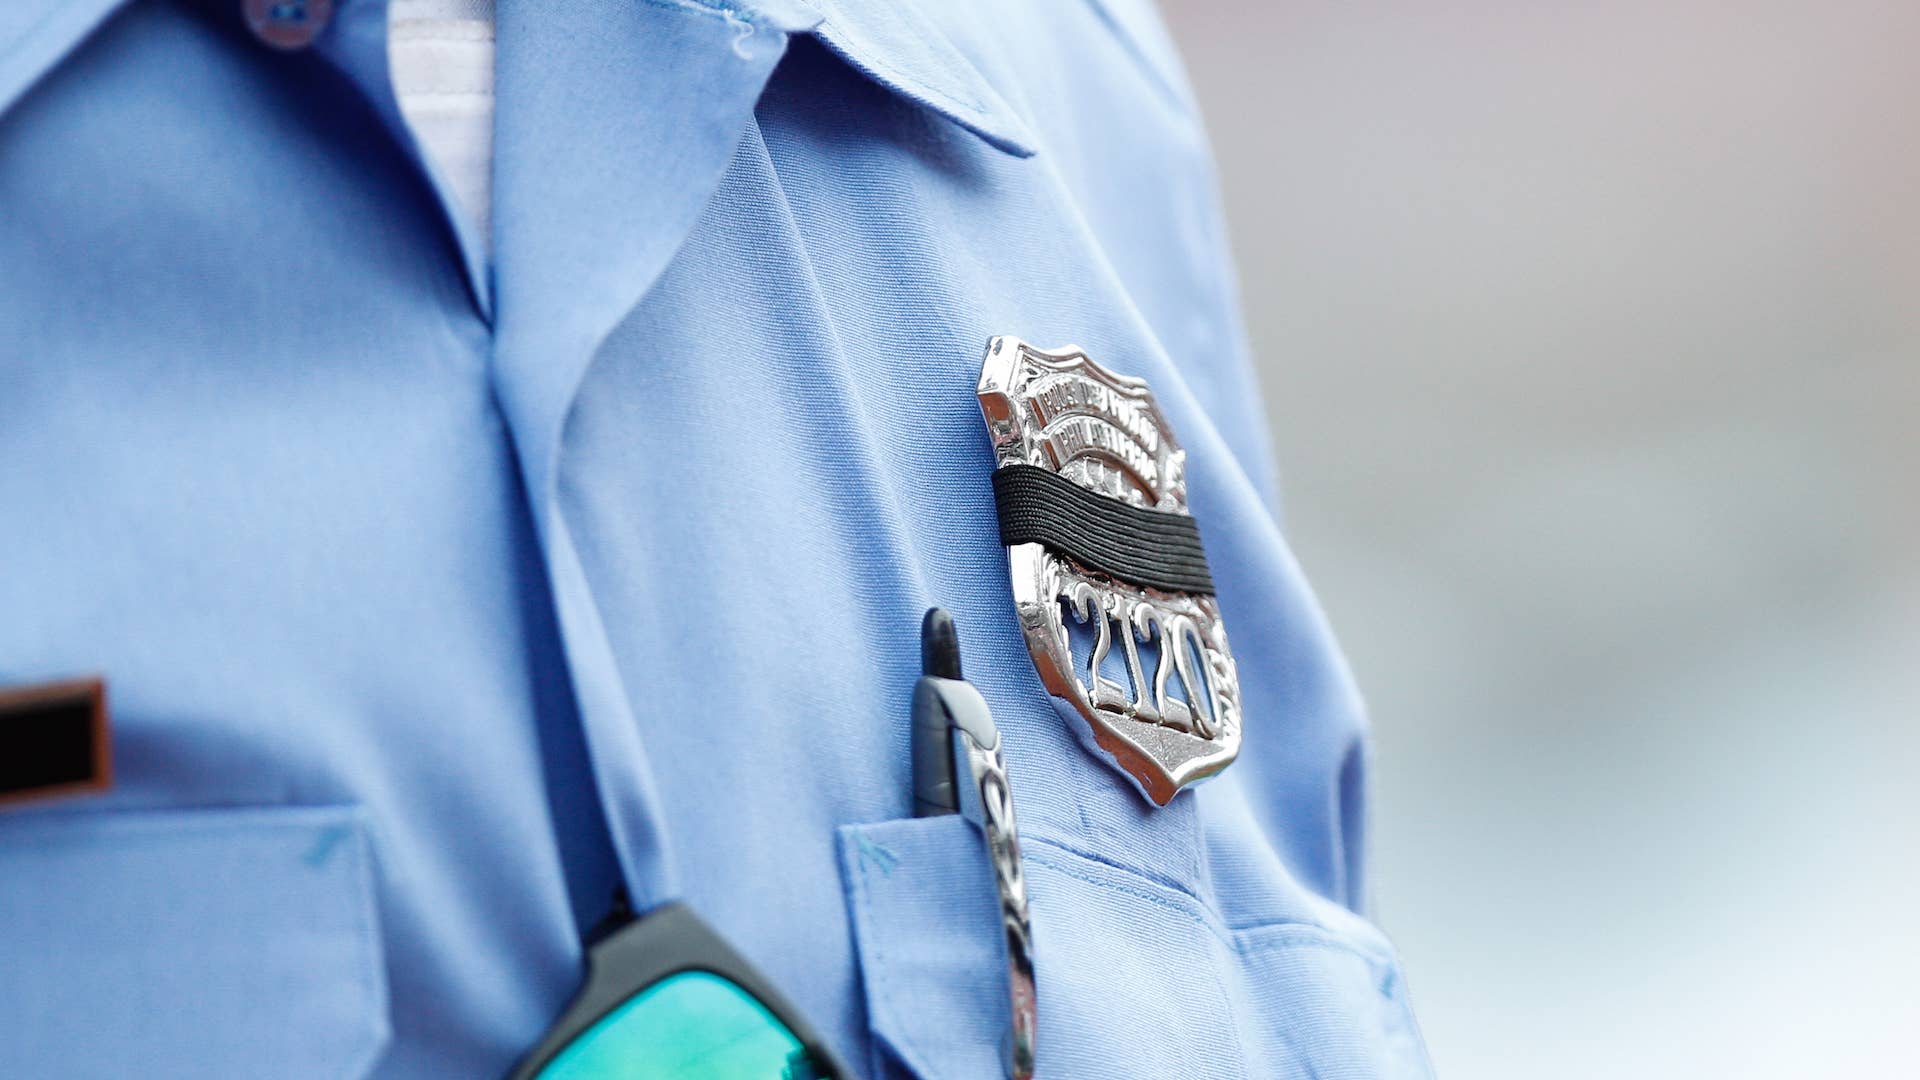 A Philadelphia Police Officer's badge